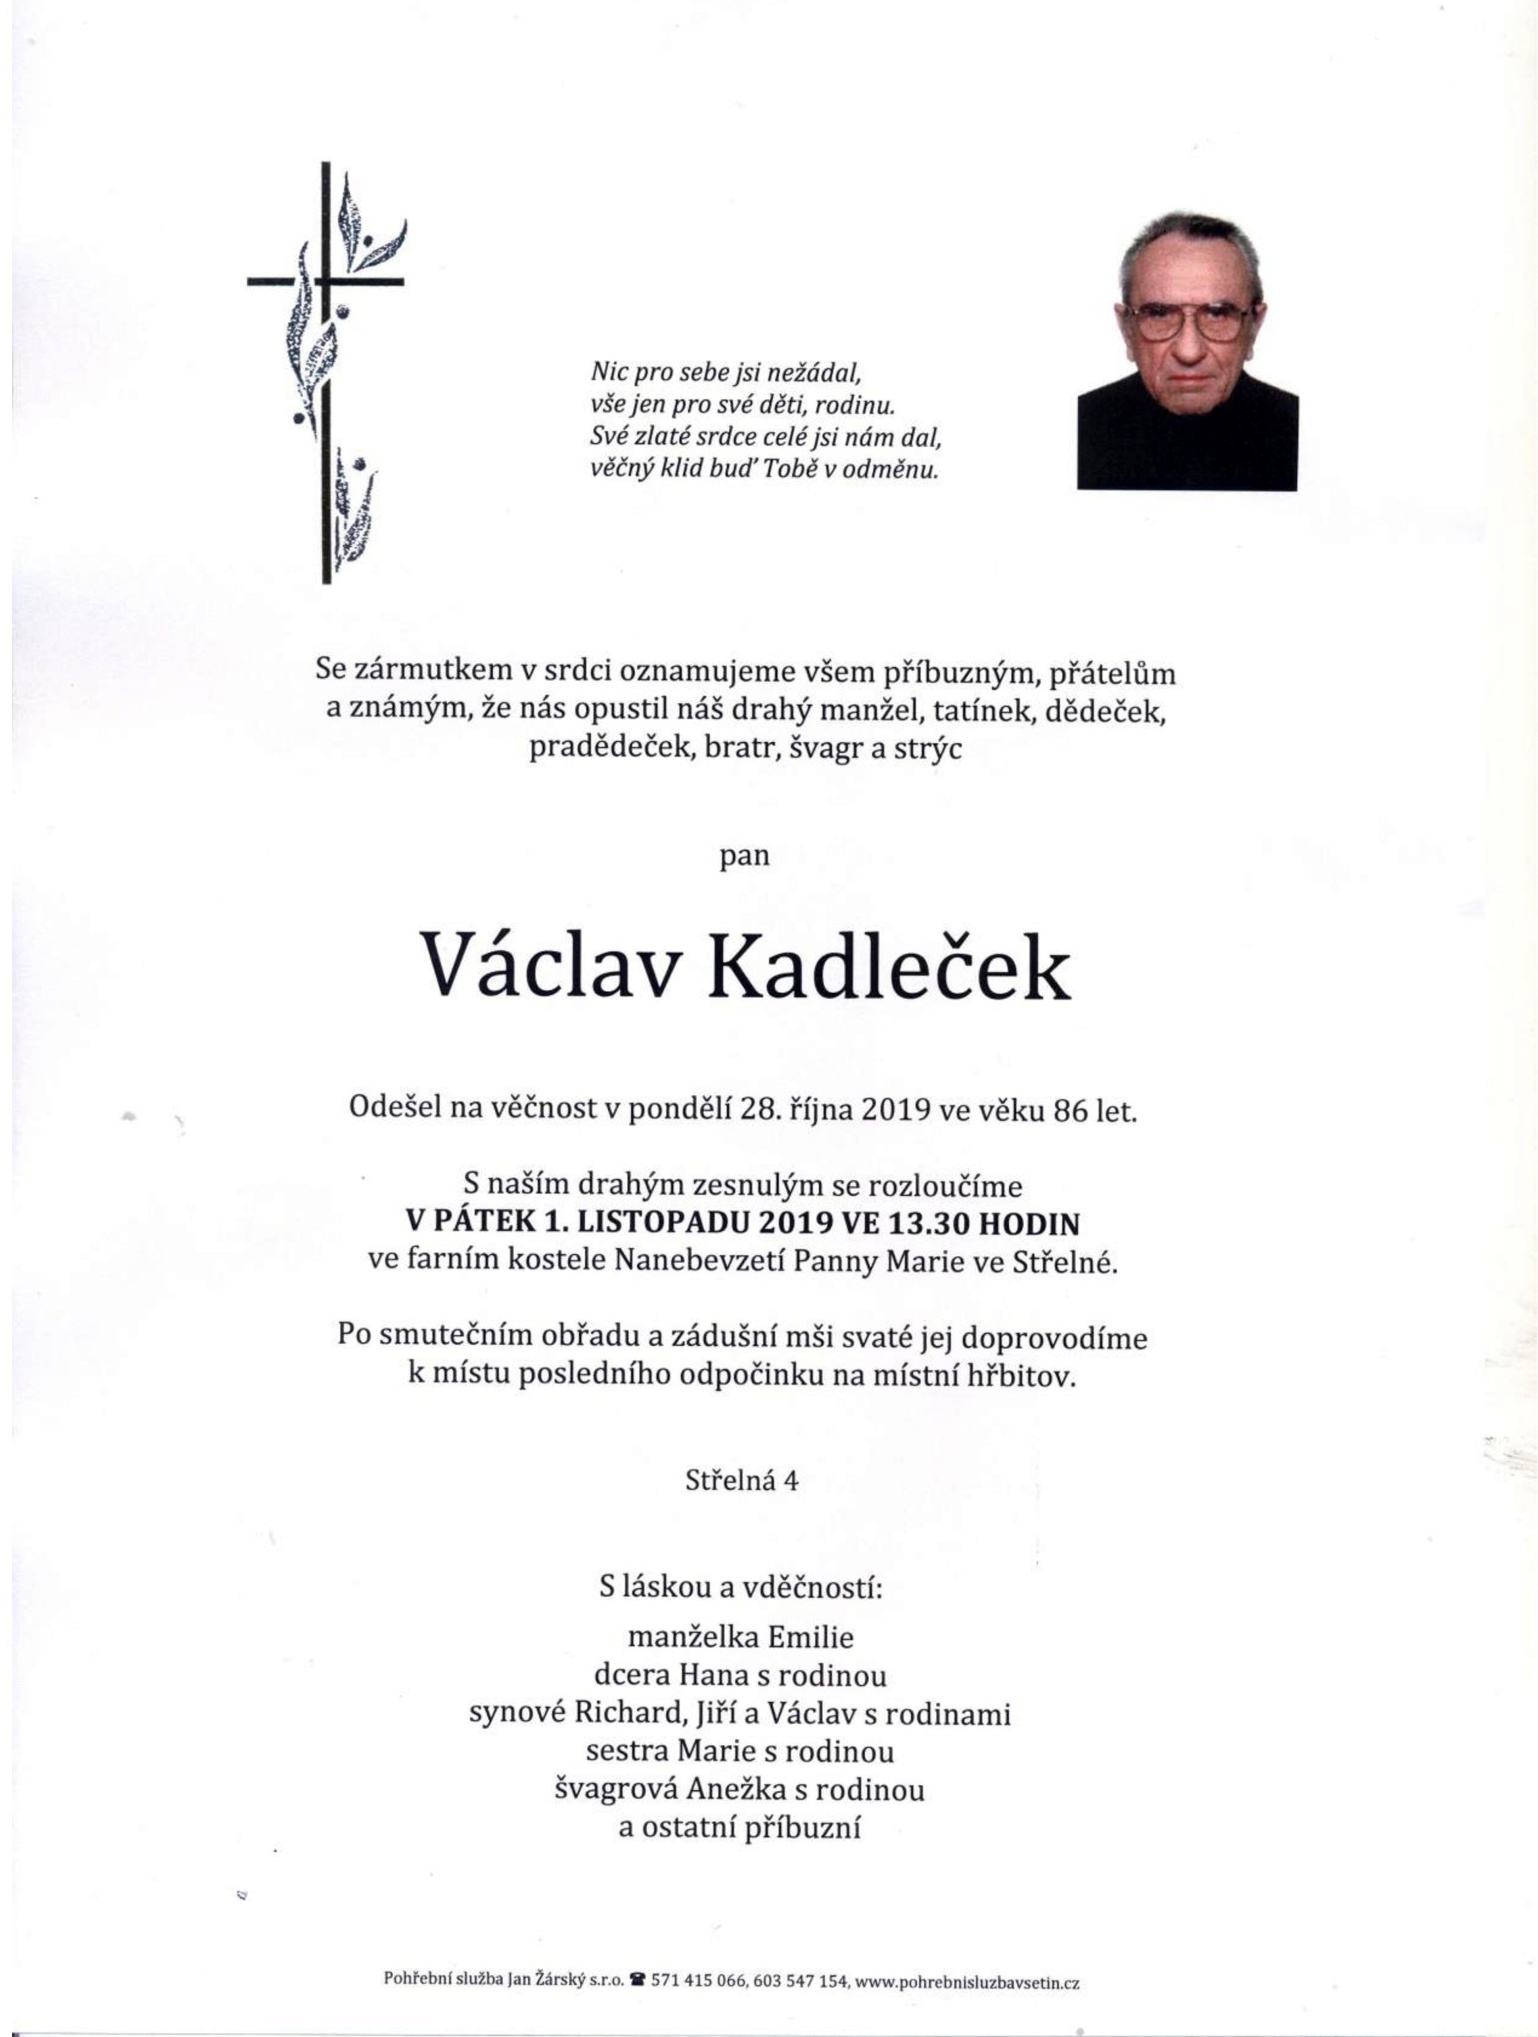 Václav Kadleček